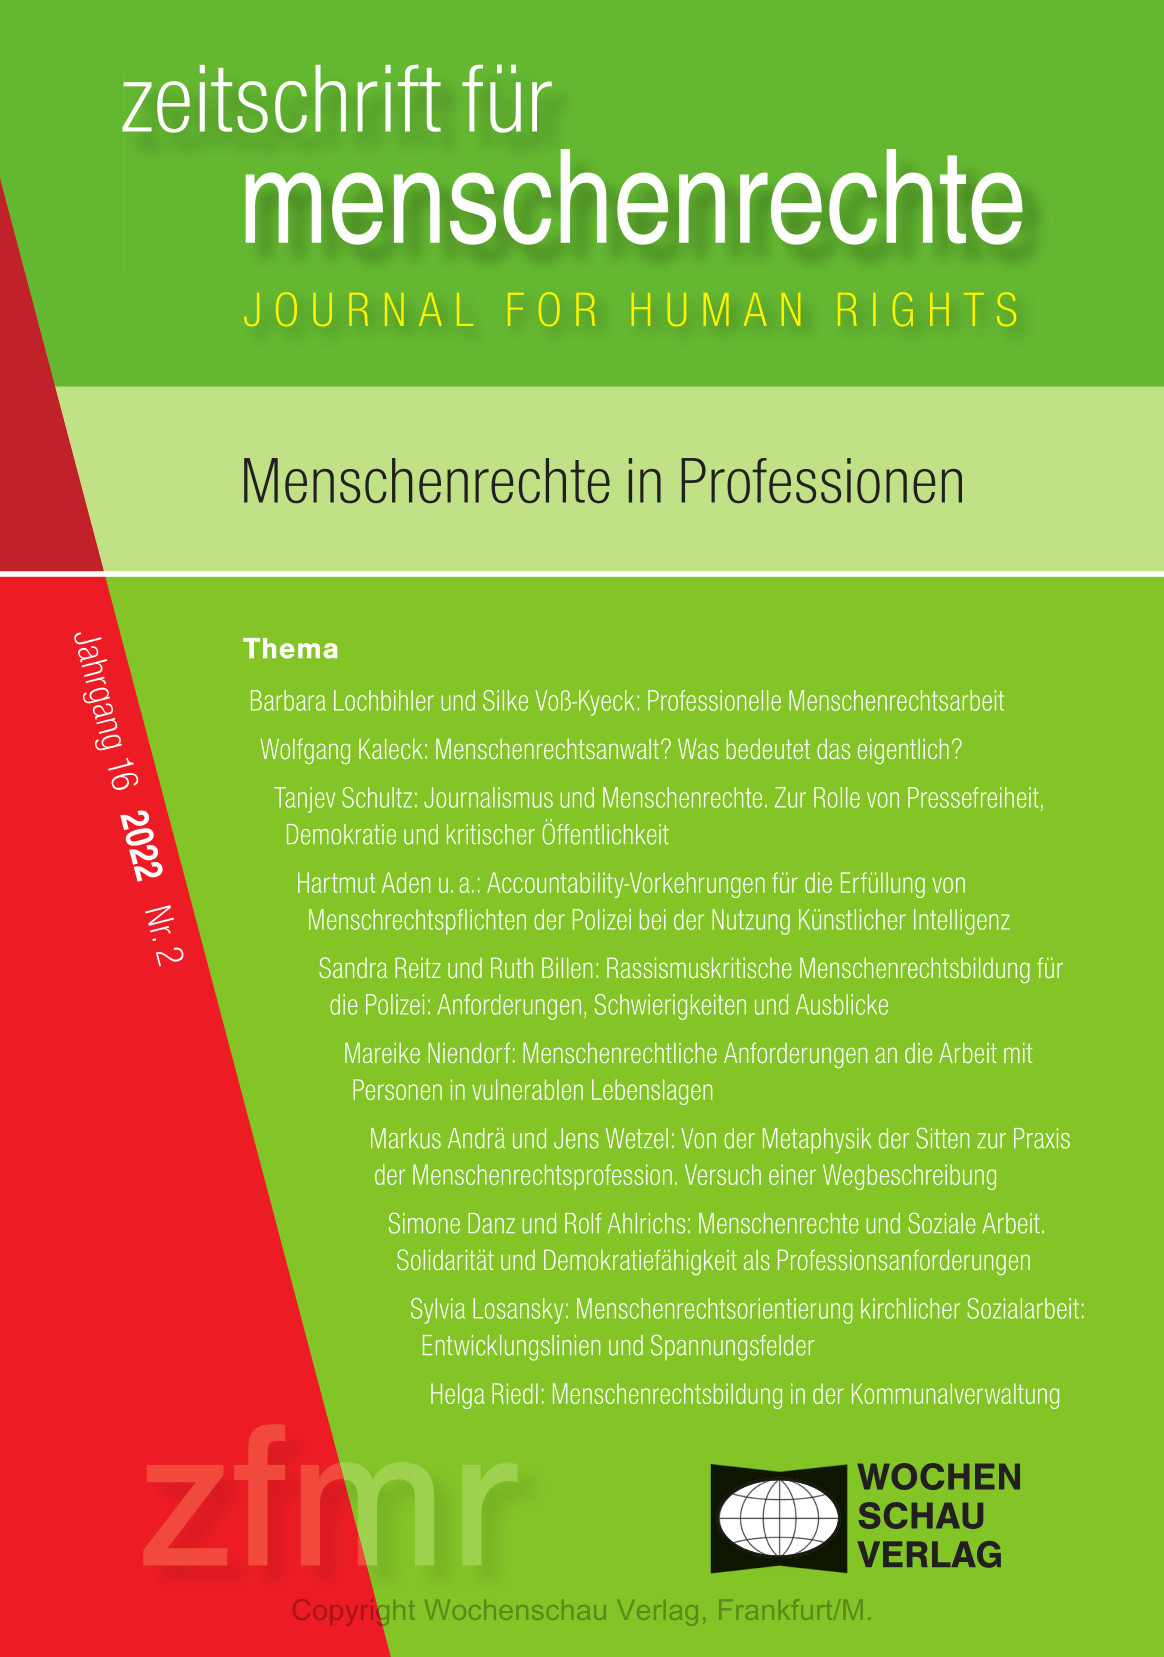 Aden/Schönrock/John/Tahraoui/Kleemann (2022): Accountability-Vorkehrungen für die Erfüllung von Menschenrechtspflichten der Polizei bei der Nutzung Künstlicher Intelligenz